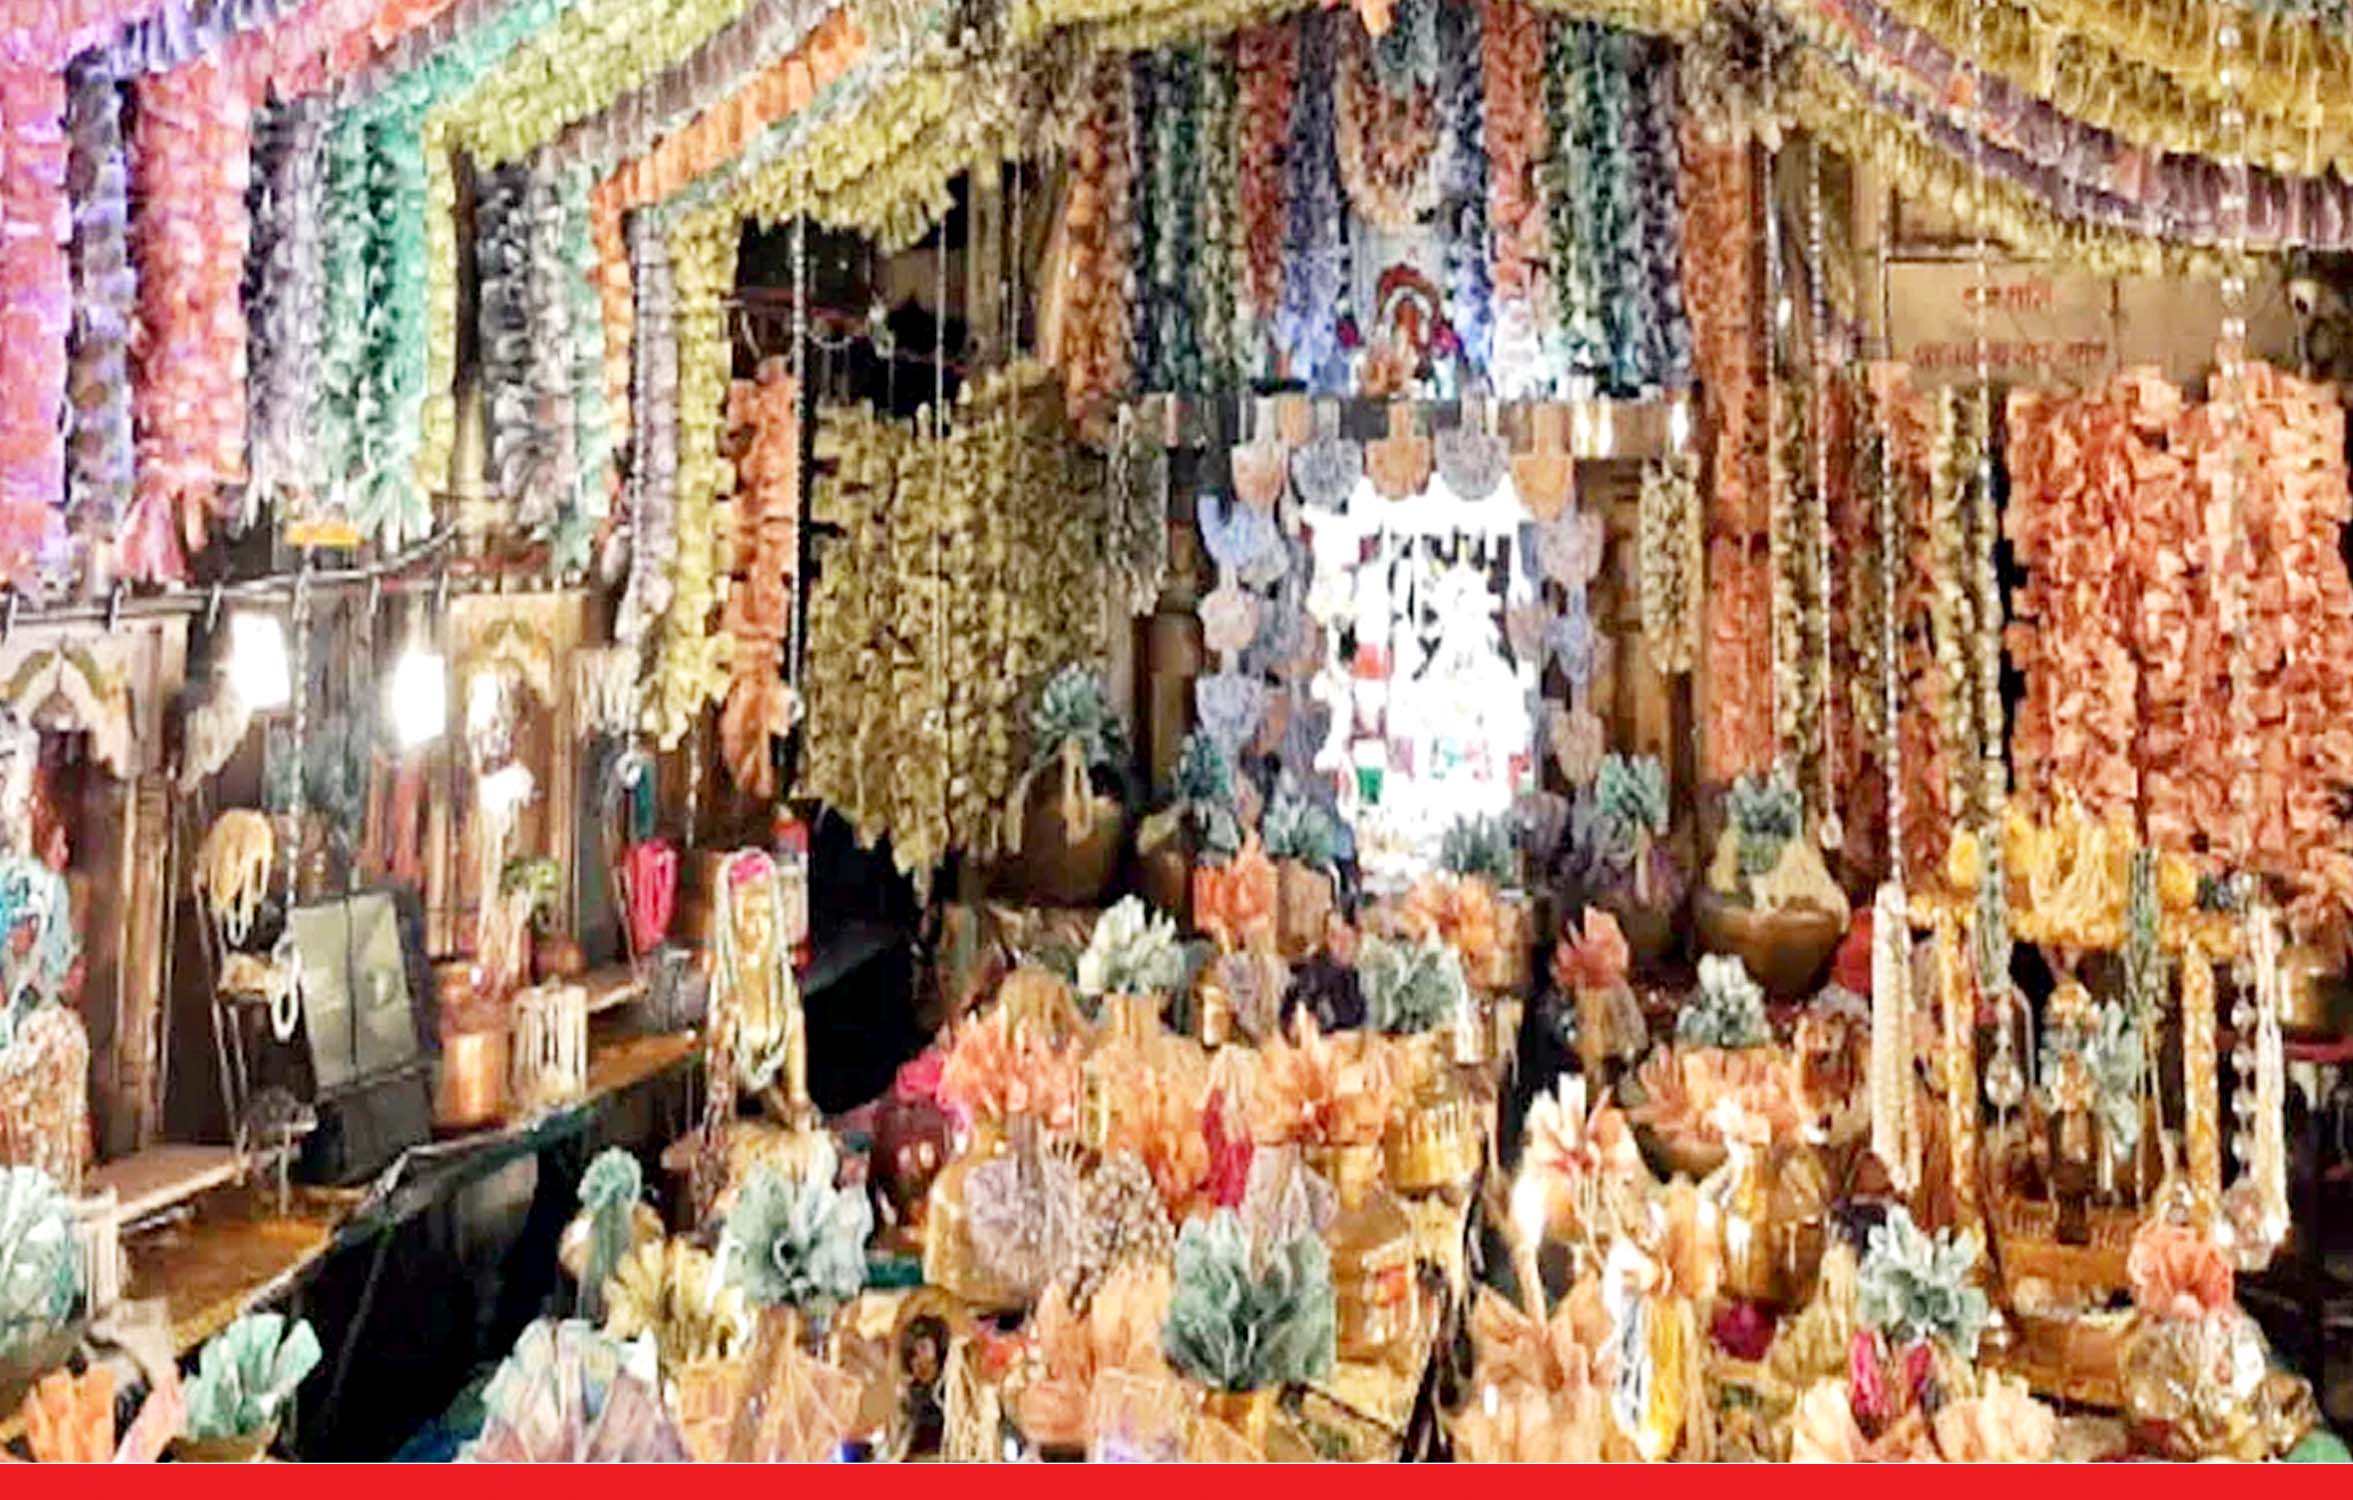 मध्य प्रदेश: देश का ऐसा लक्ष्मी मंदिर जो दीपावली पर सजता है नोटों से